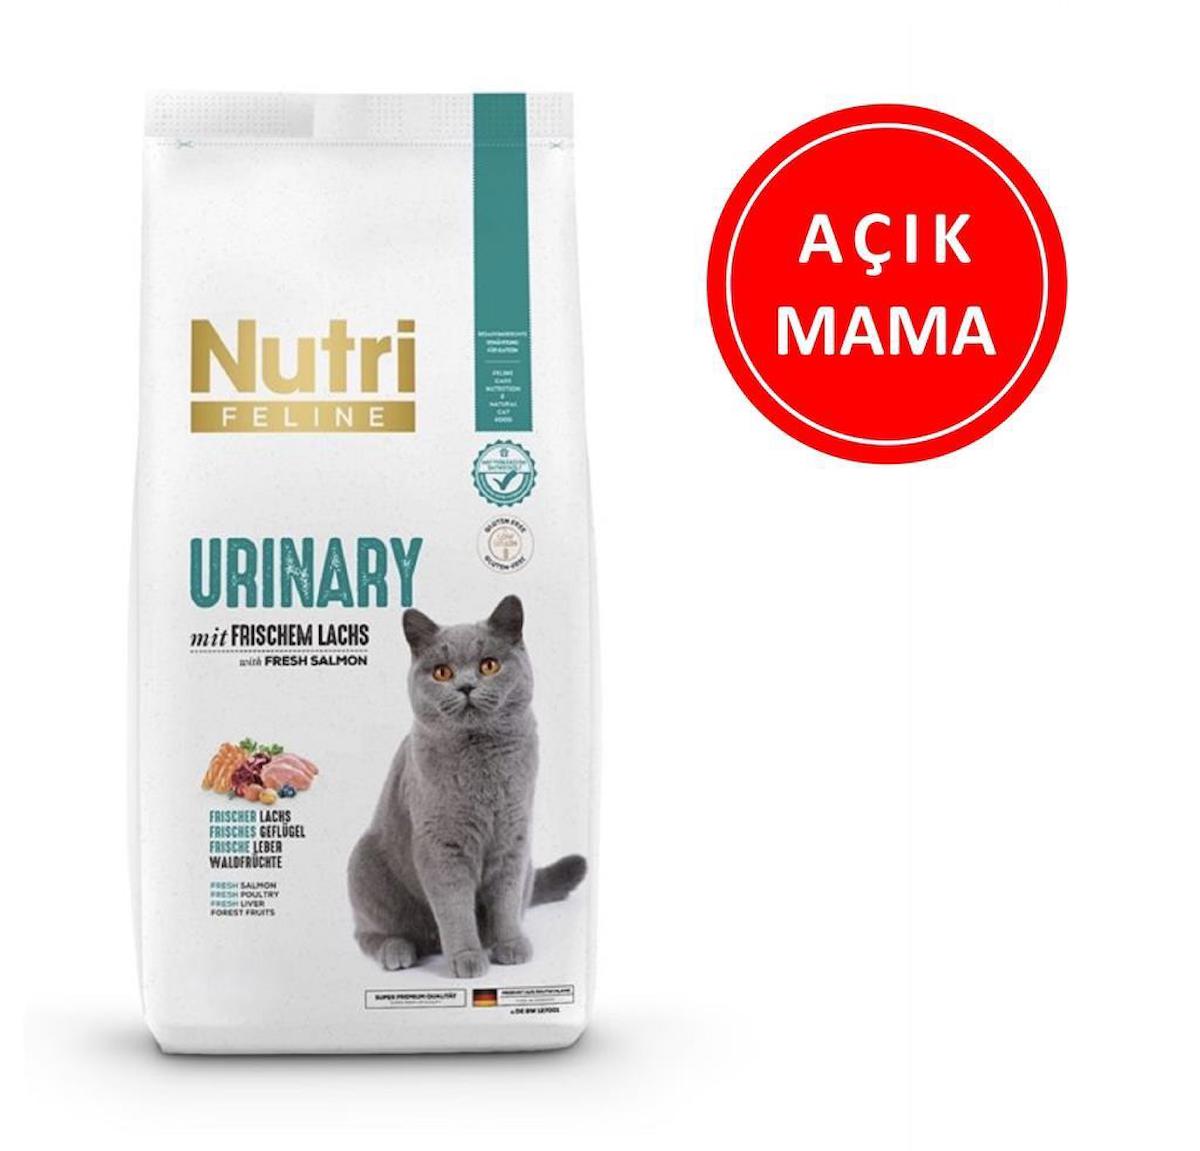 Nutri Feline Urinary Somonlu Yetişkin Kuru Kedi Maması 1 kg